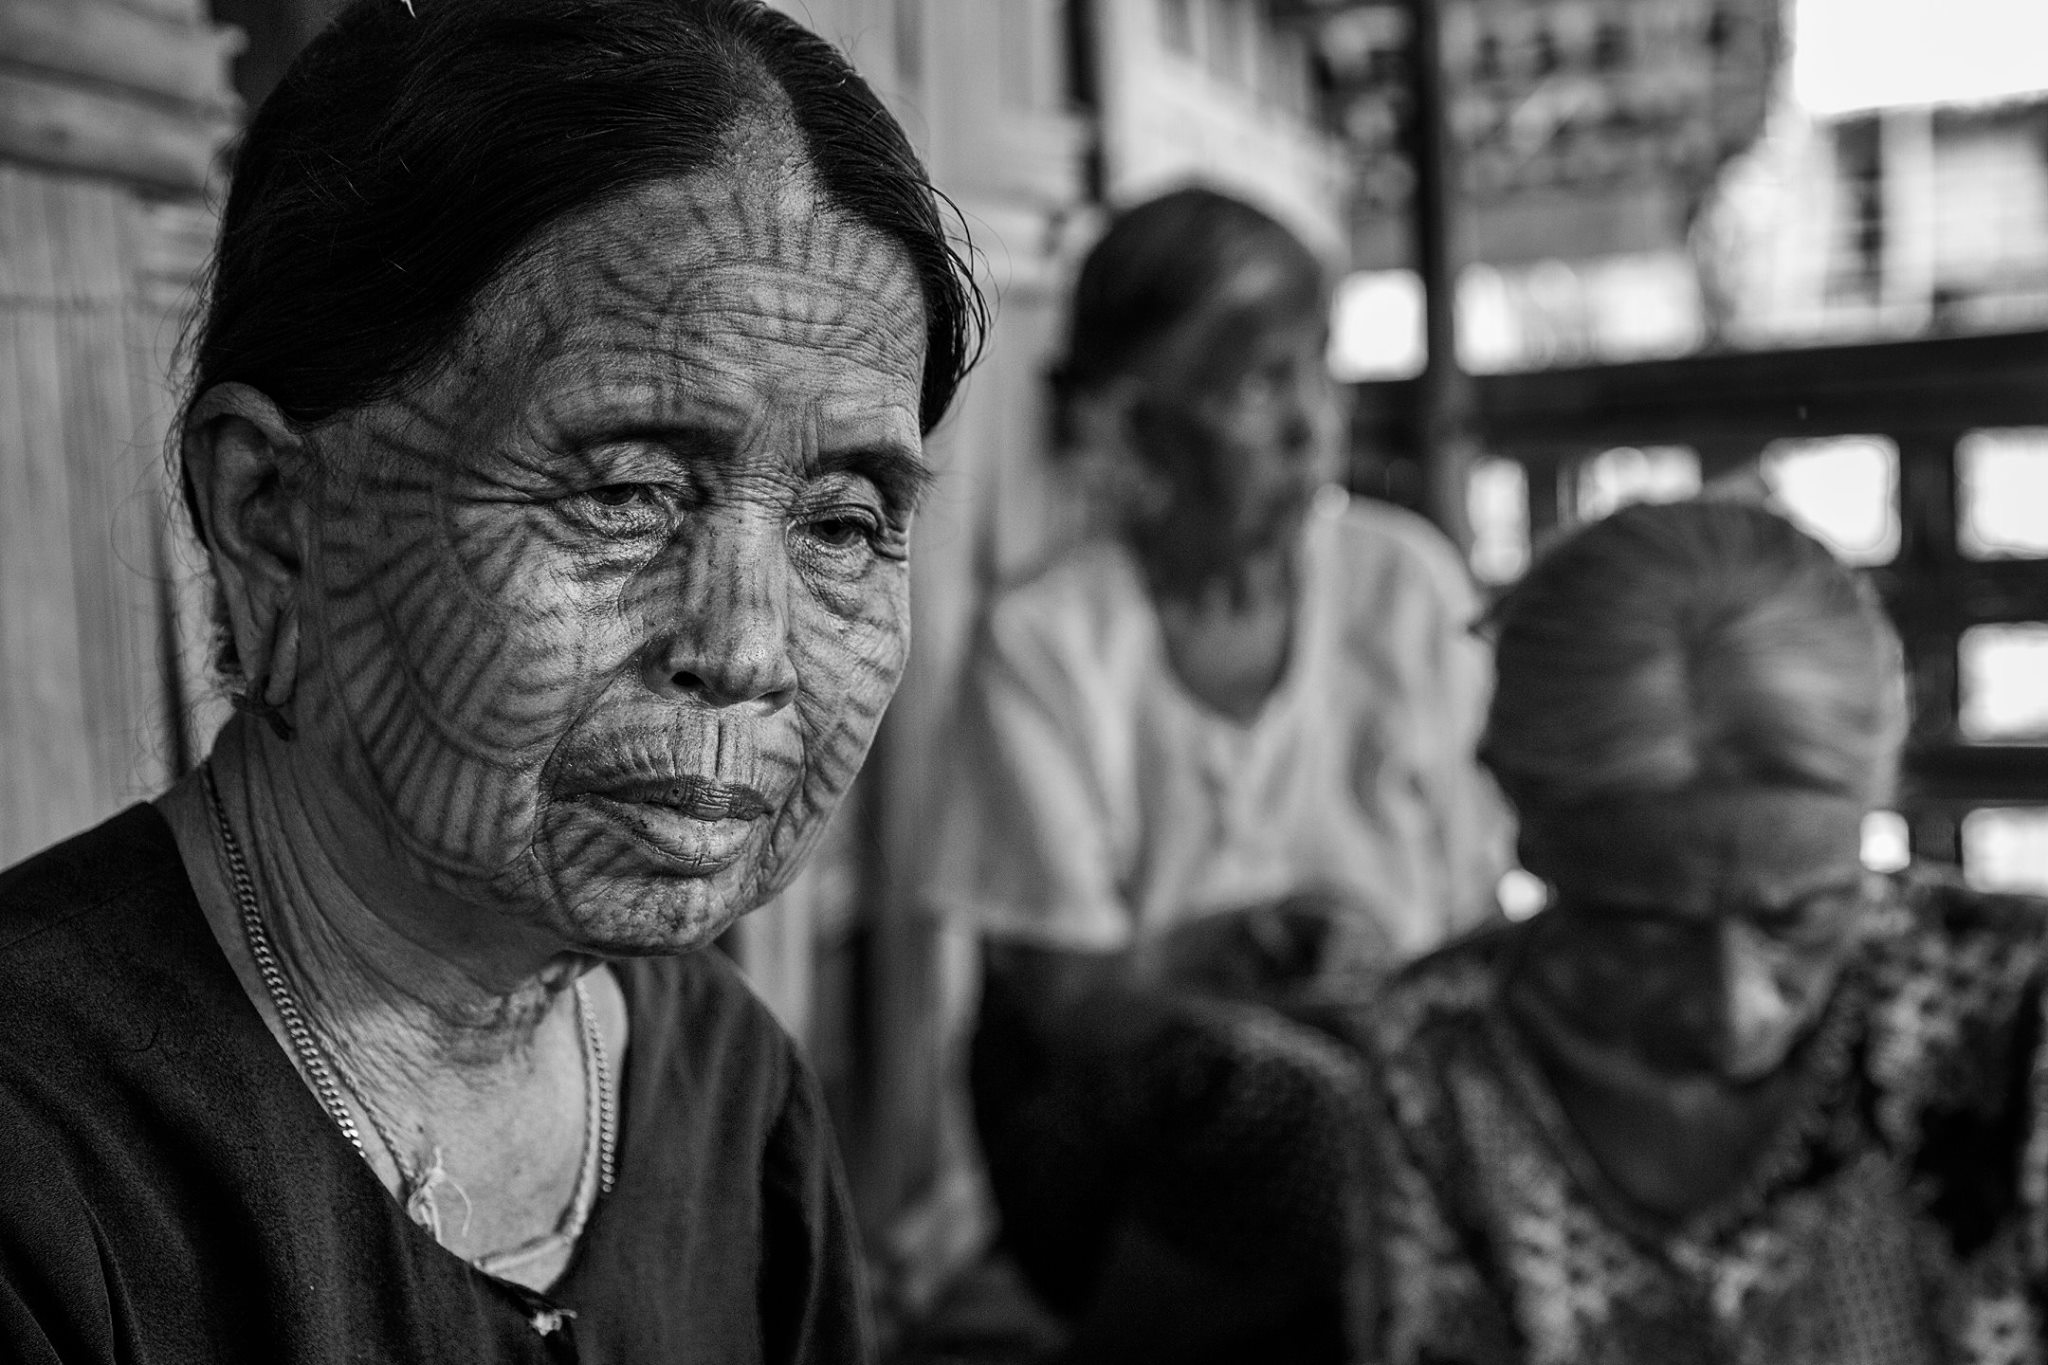 Myanmarportraits16